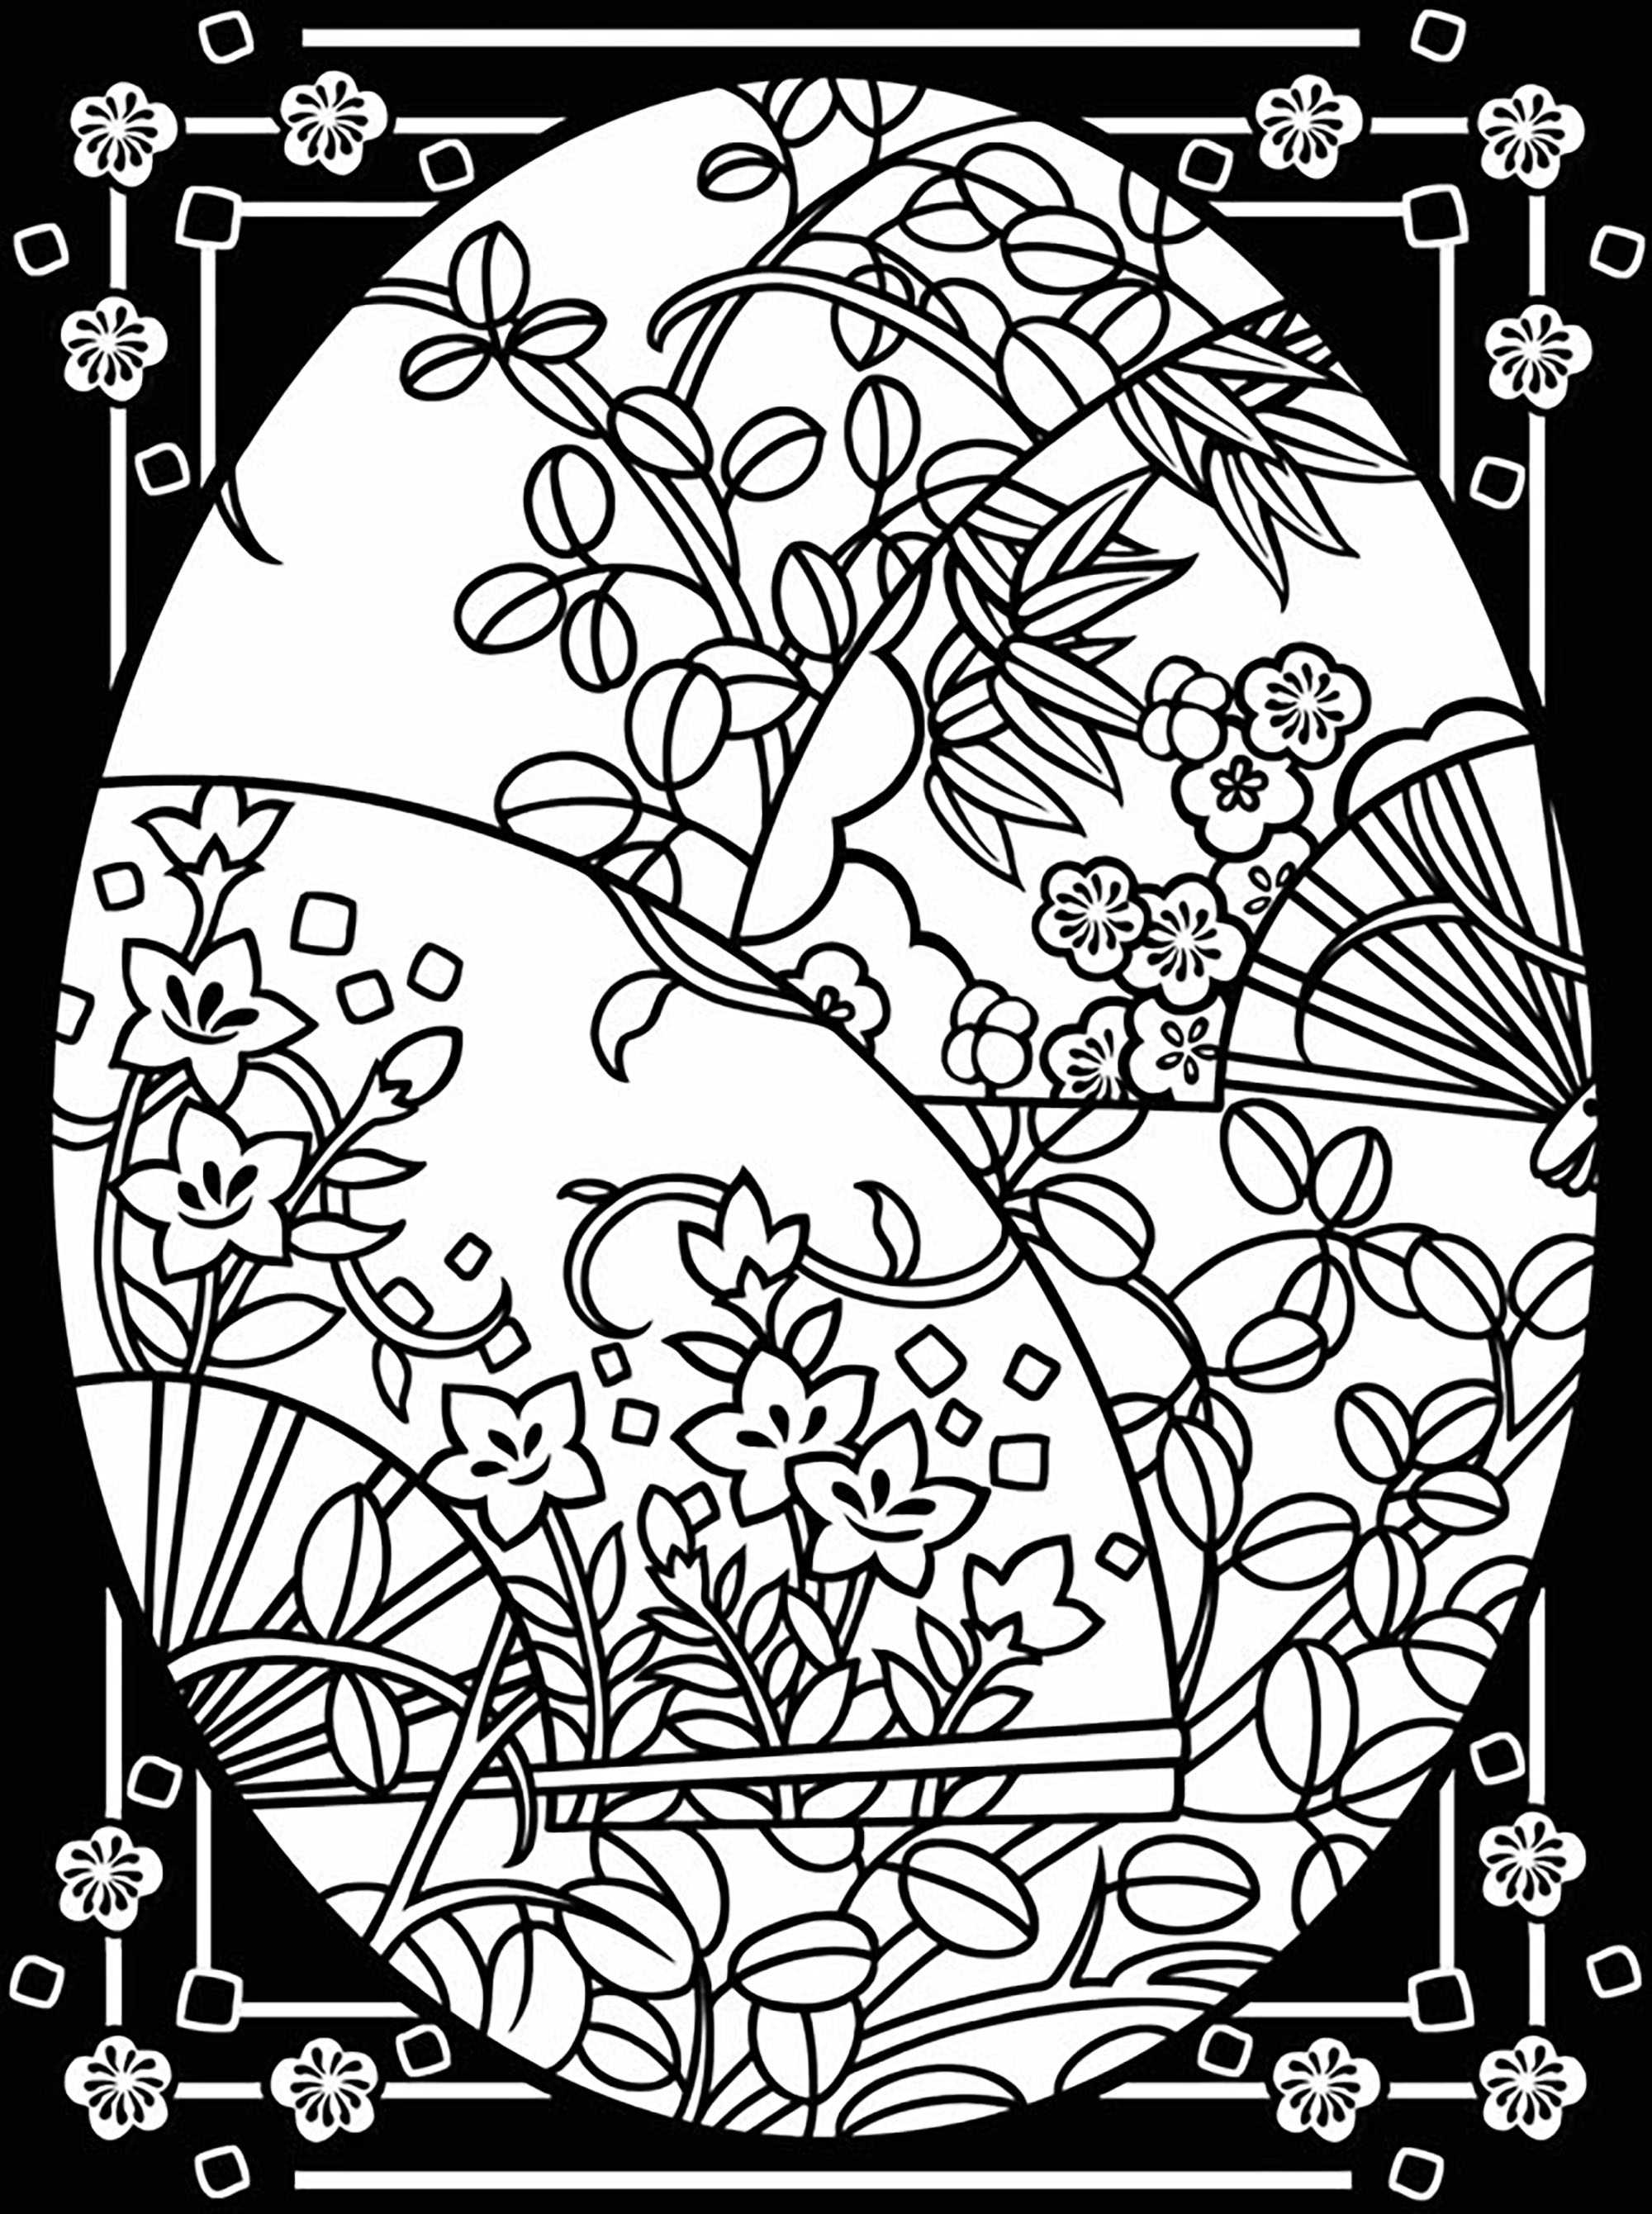 Ovo de Páscoa com flores e folhas bonitas e rebordo grande, Artista : Dover Publications   Fonte : doverpublications